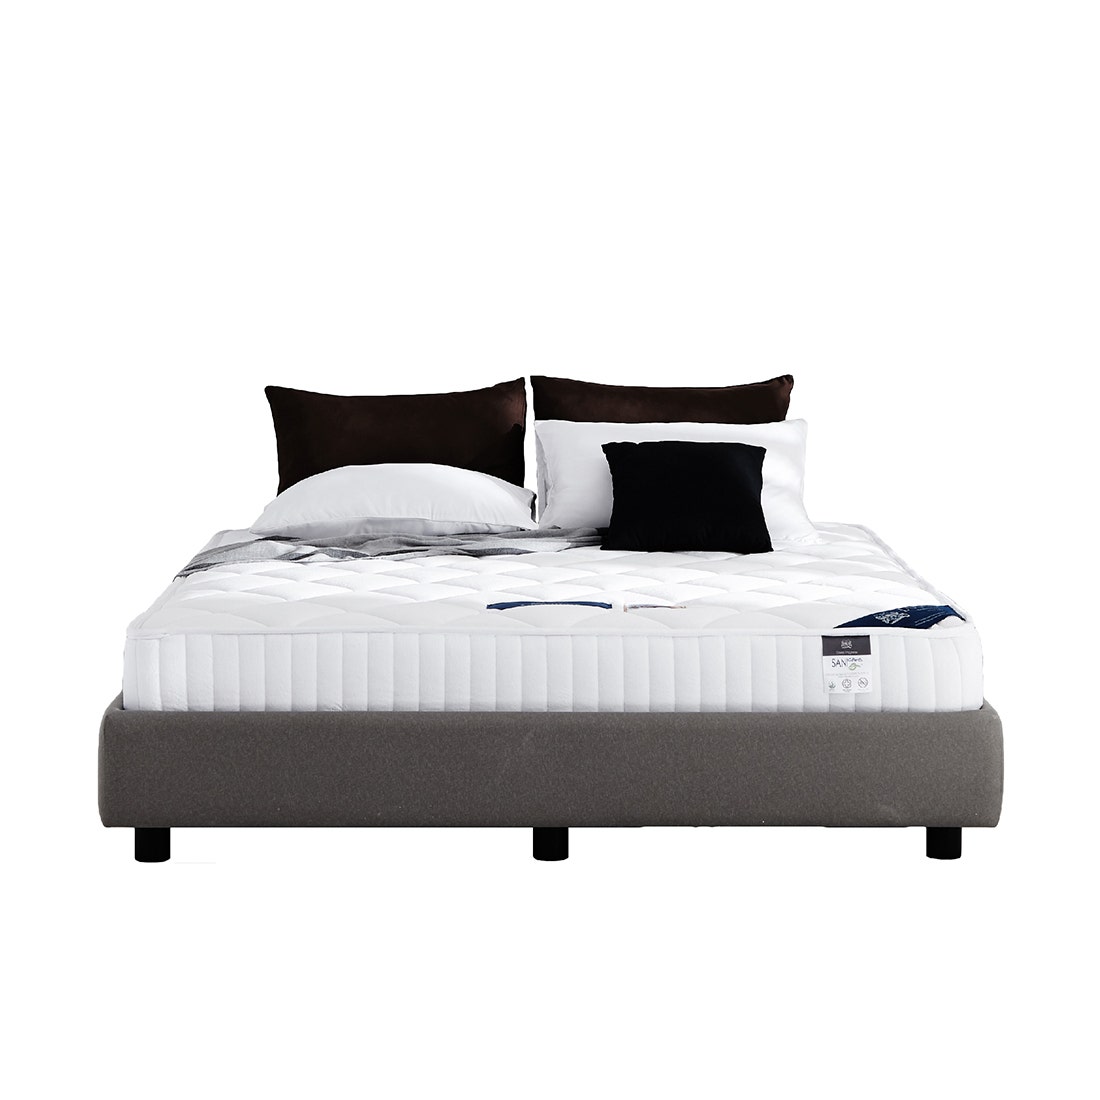 39004941-mattress-bedding-mattresses-spring-mattresses-01